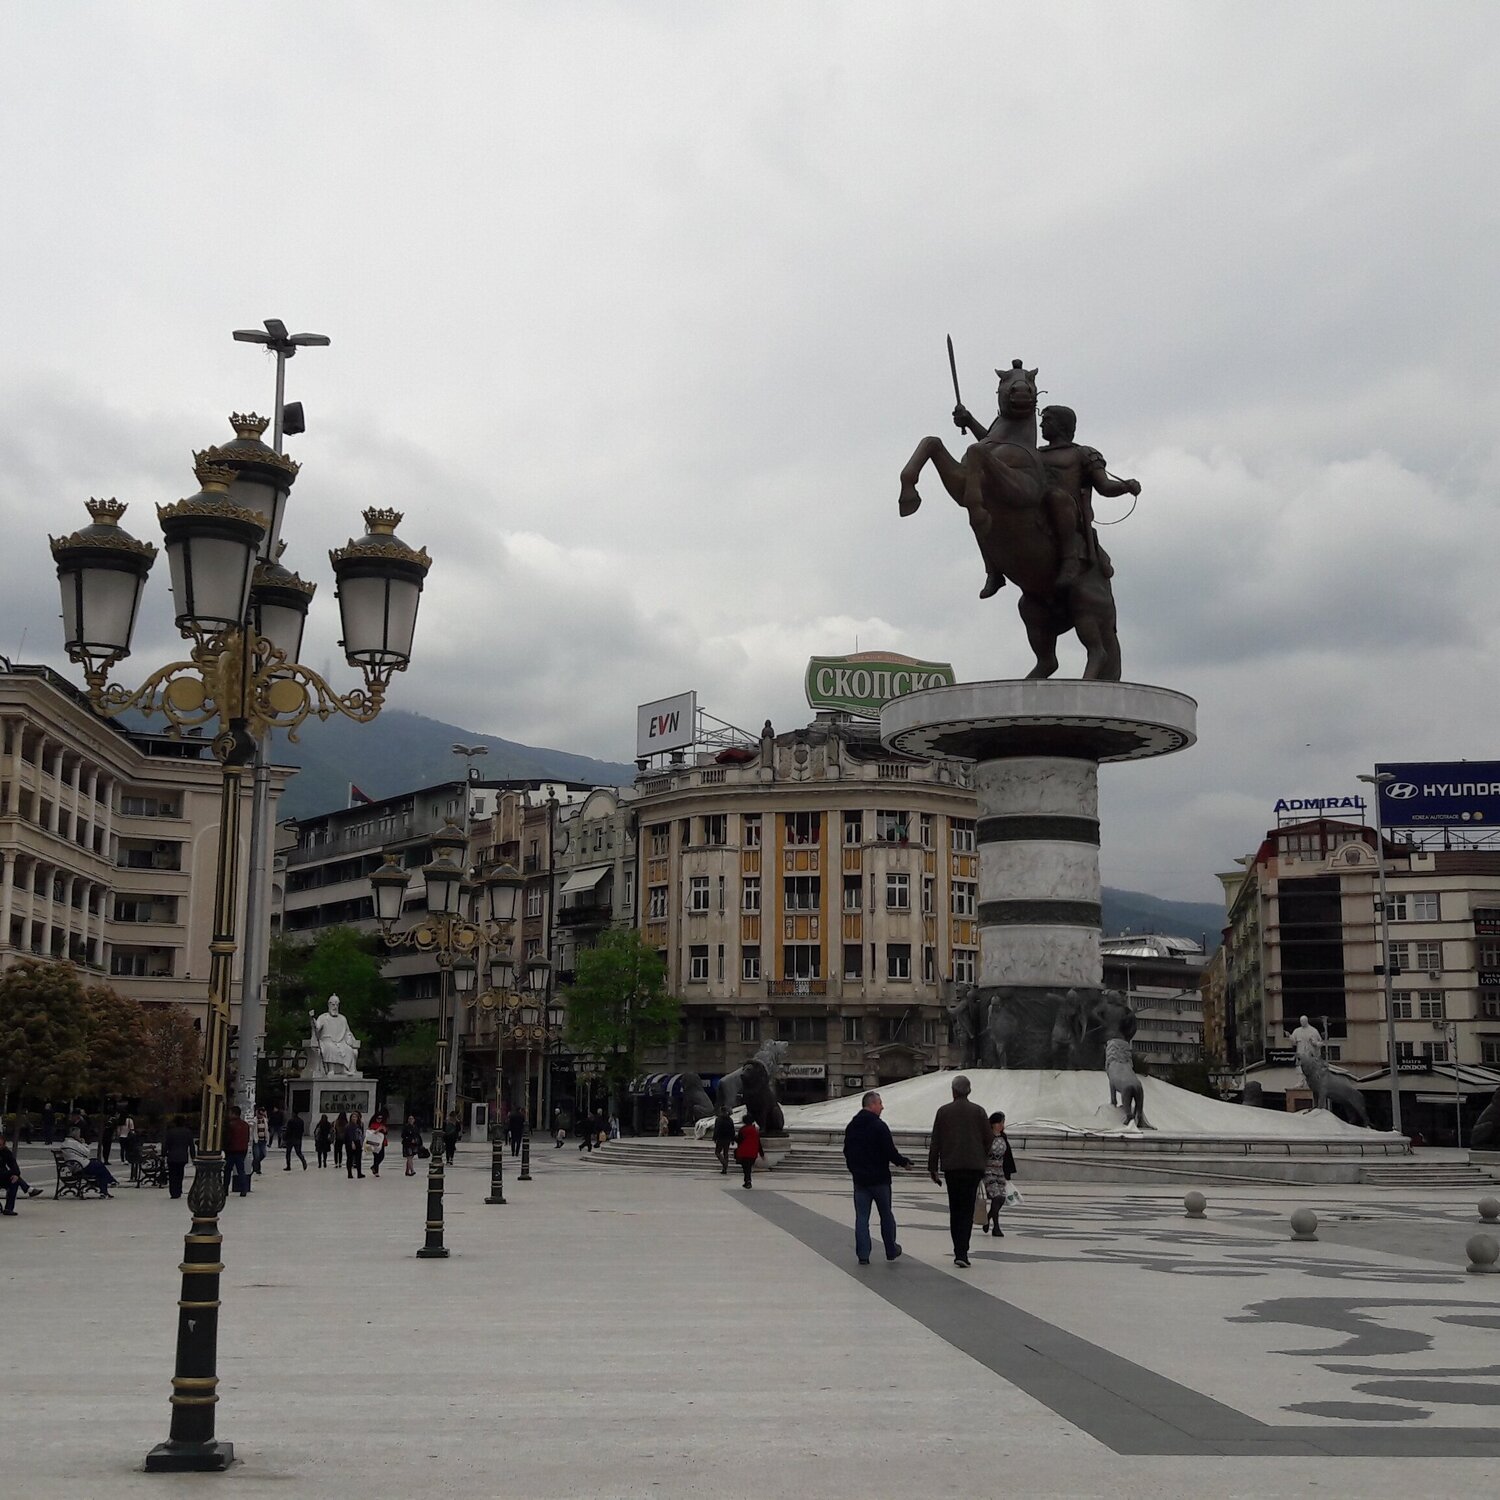 Достопримечательности Скопье за 2 дня: город памятников и восточных базаров